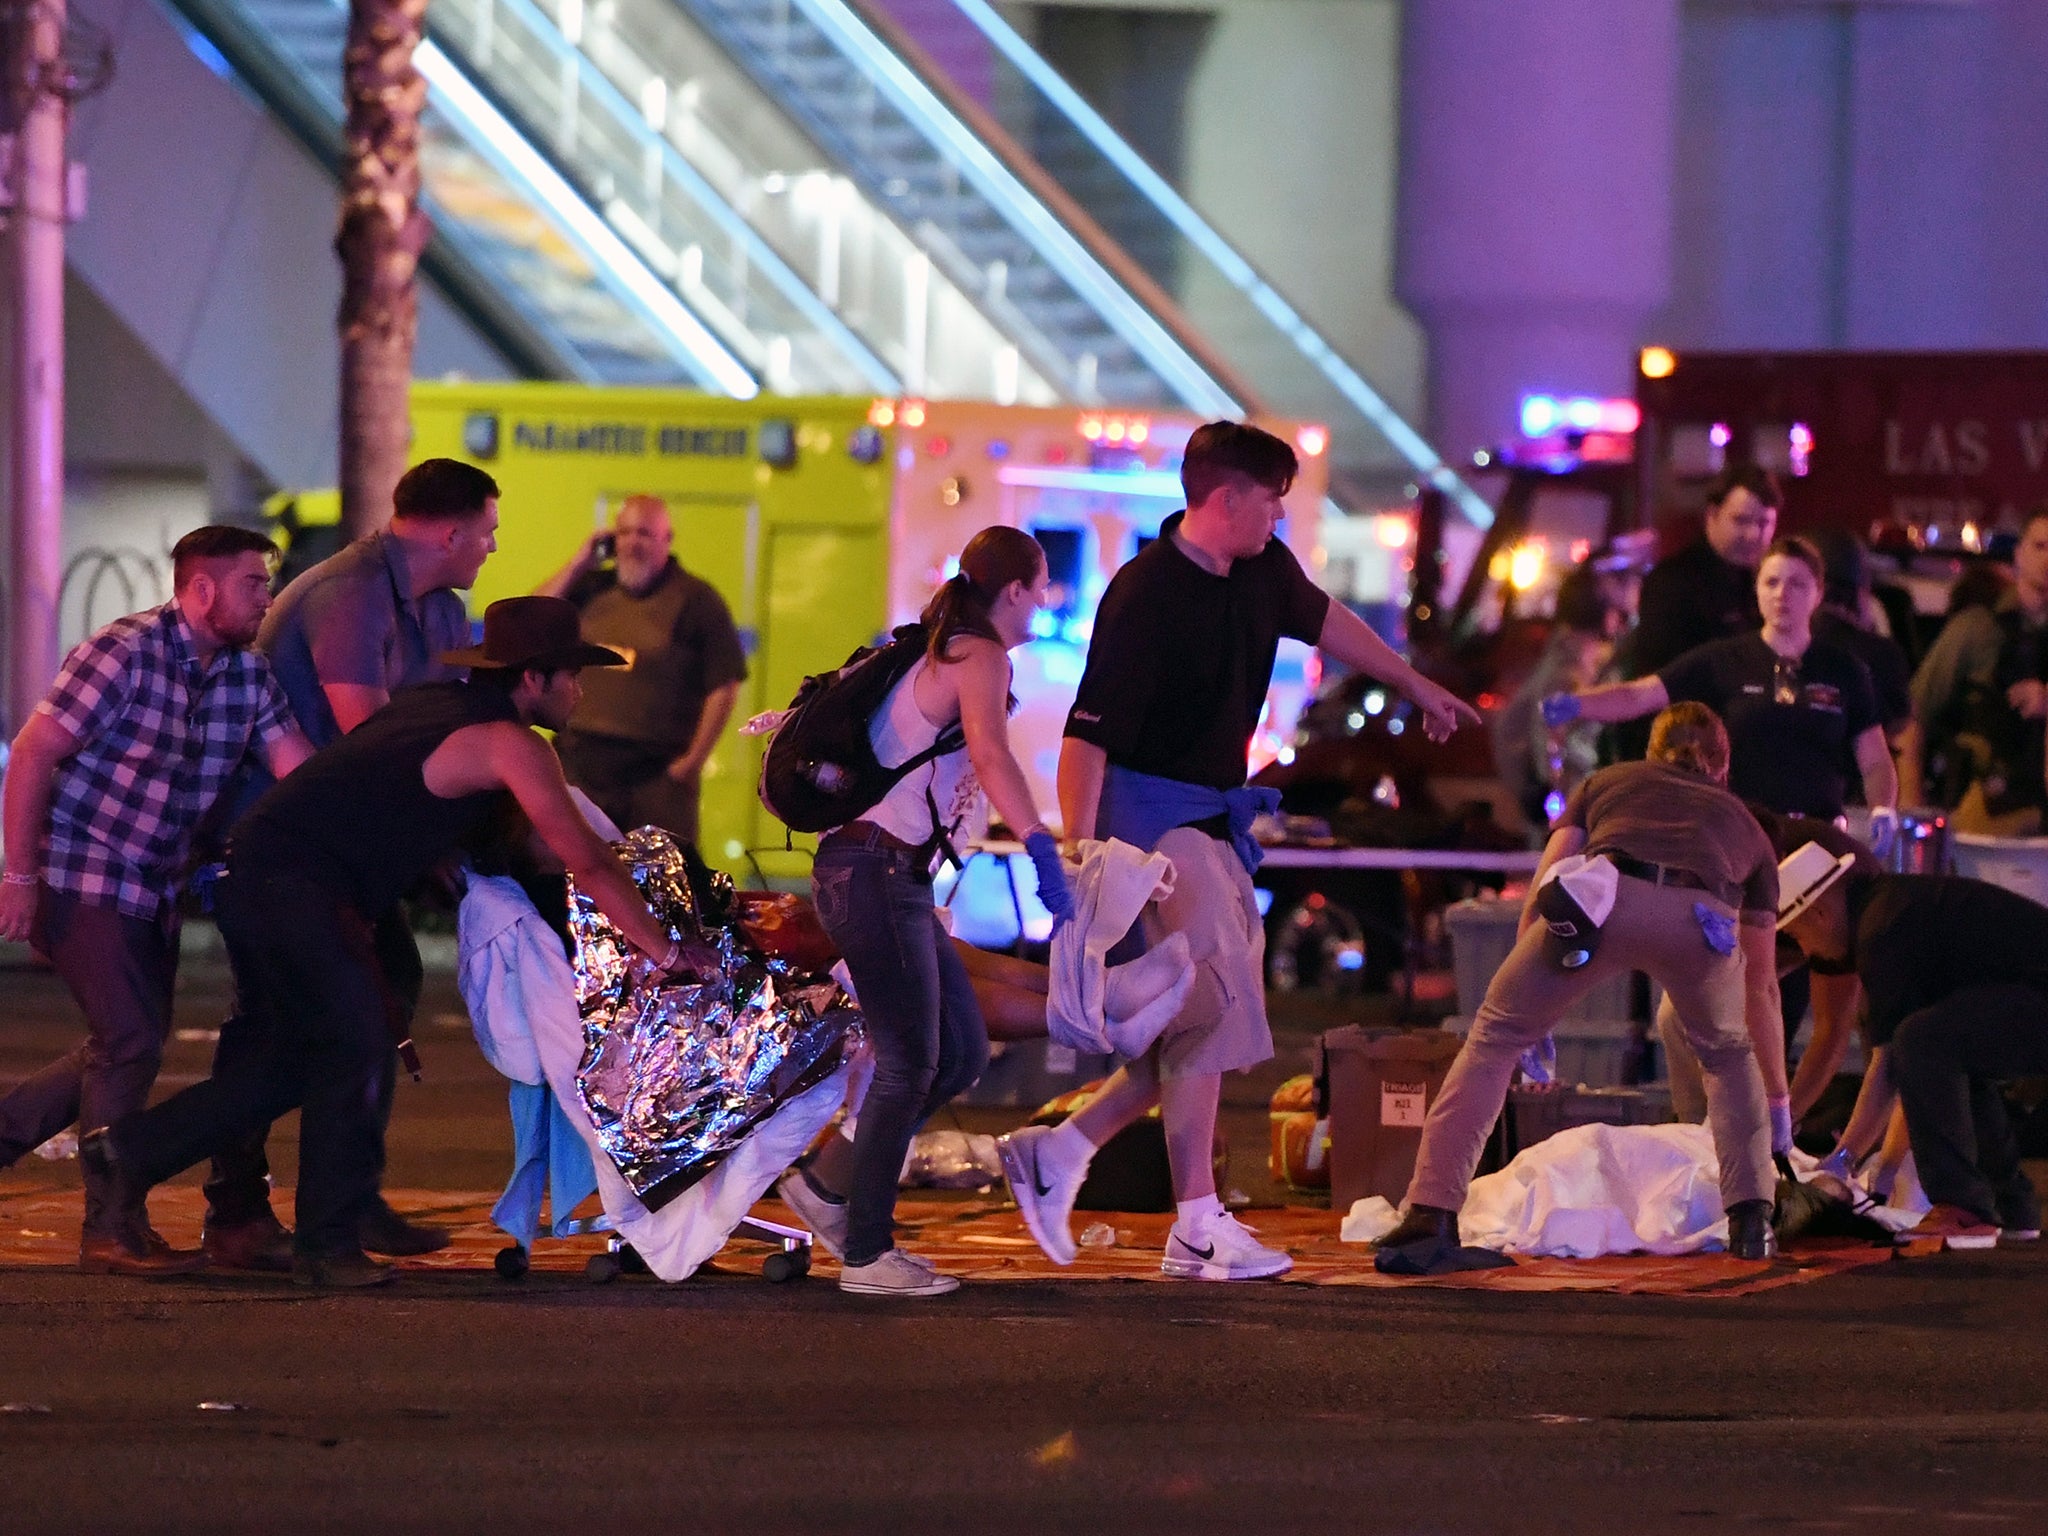 A gunman opened fire on a music festival in Las Vegas in 2017